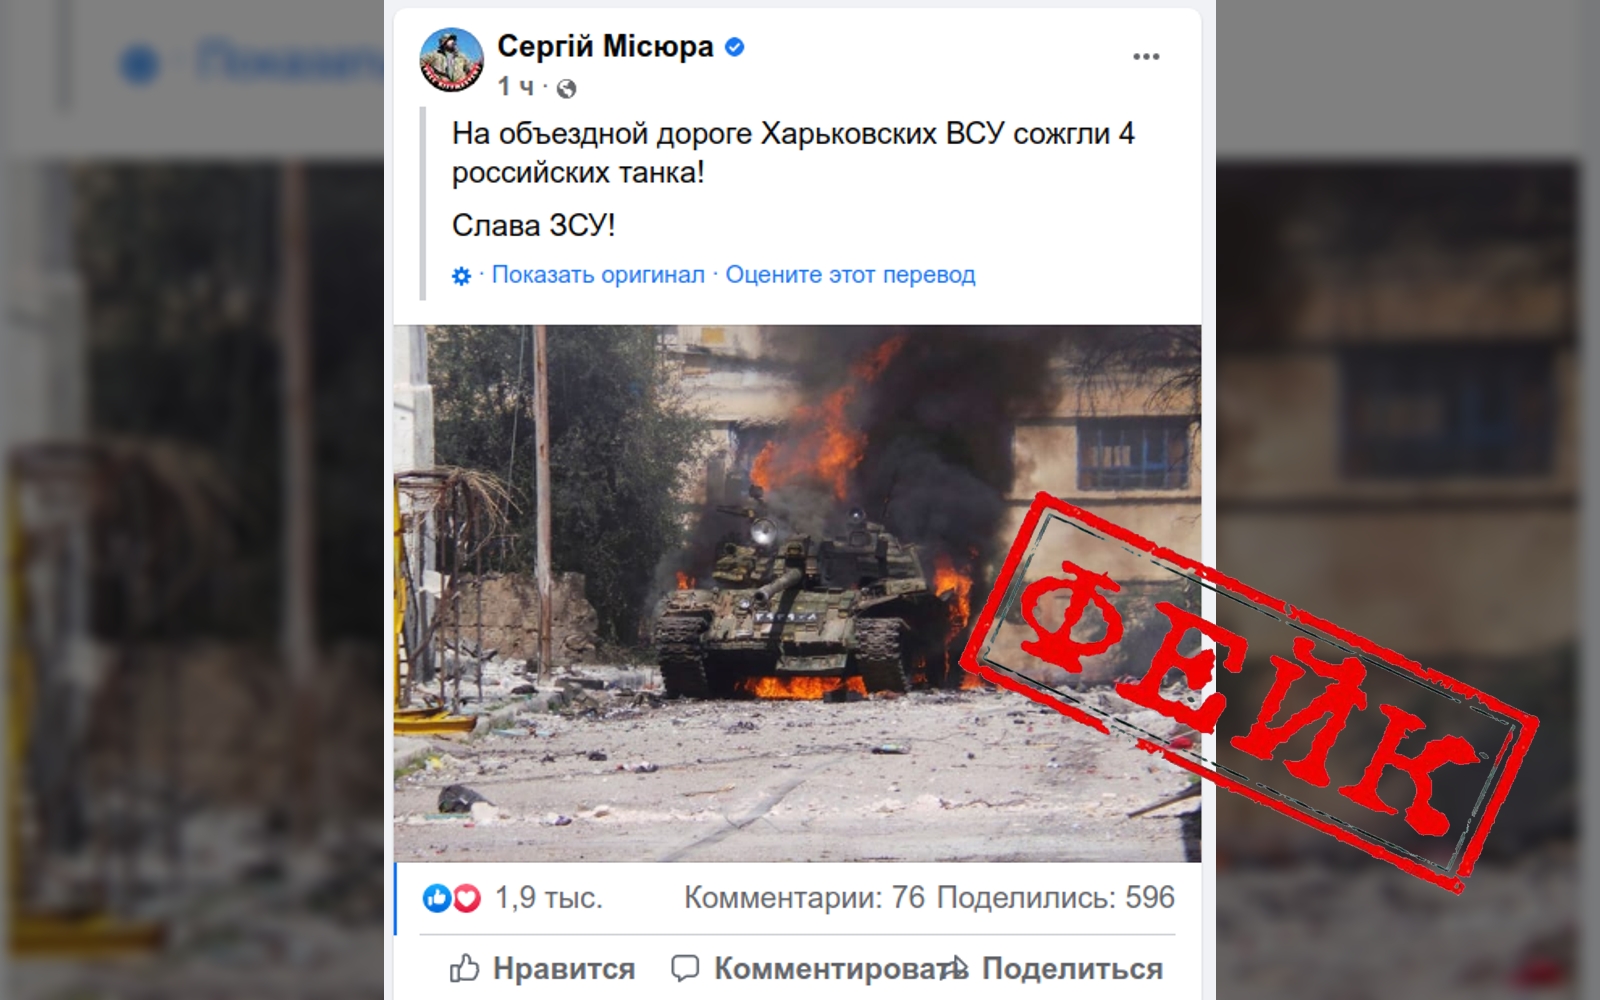 Украинская «перемога» с горящими российскими танками оказалась вымыслом